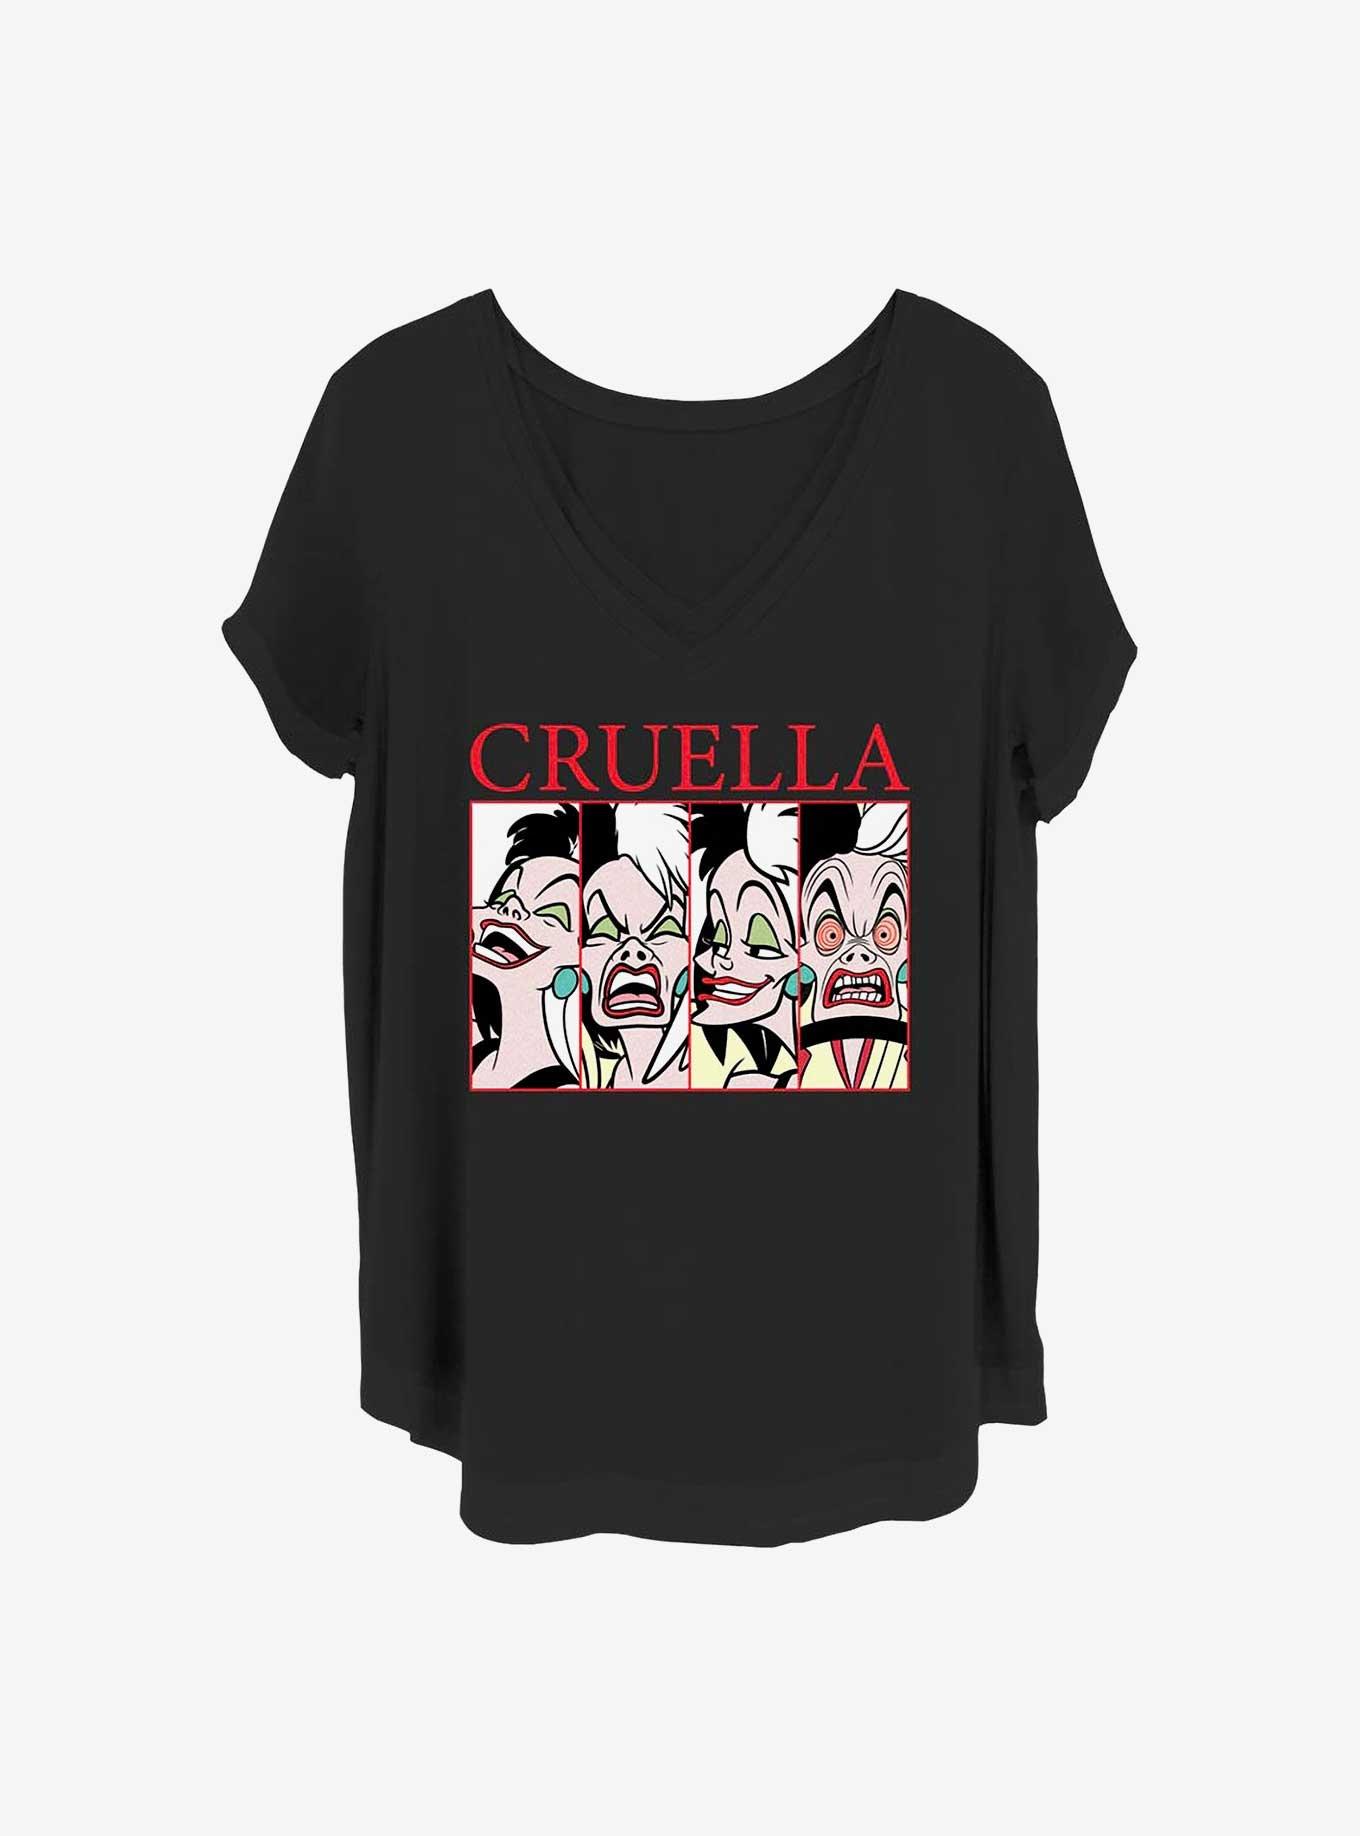 Disney Cruella Cruel Expressions Girls T-Shirt Plus Size, BLACK, hi-res